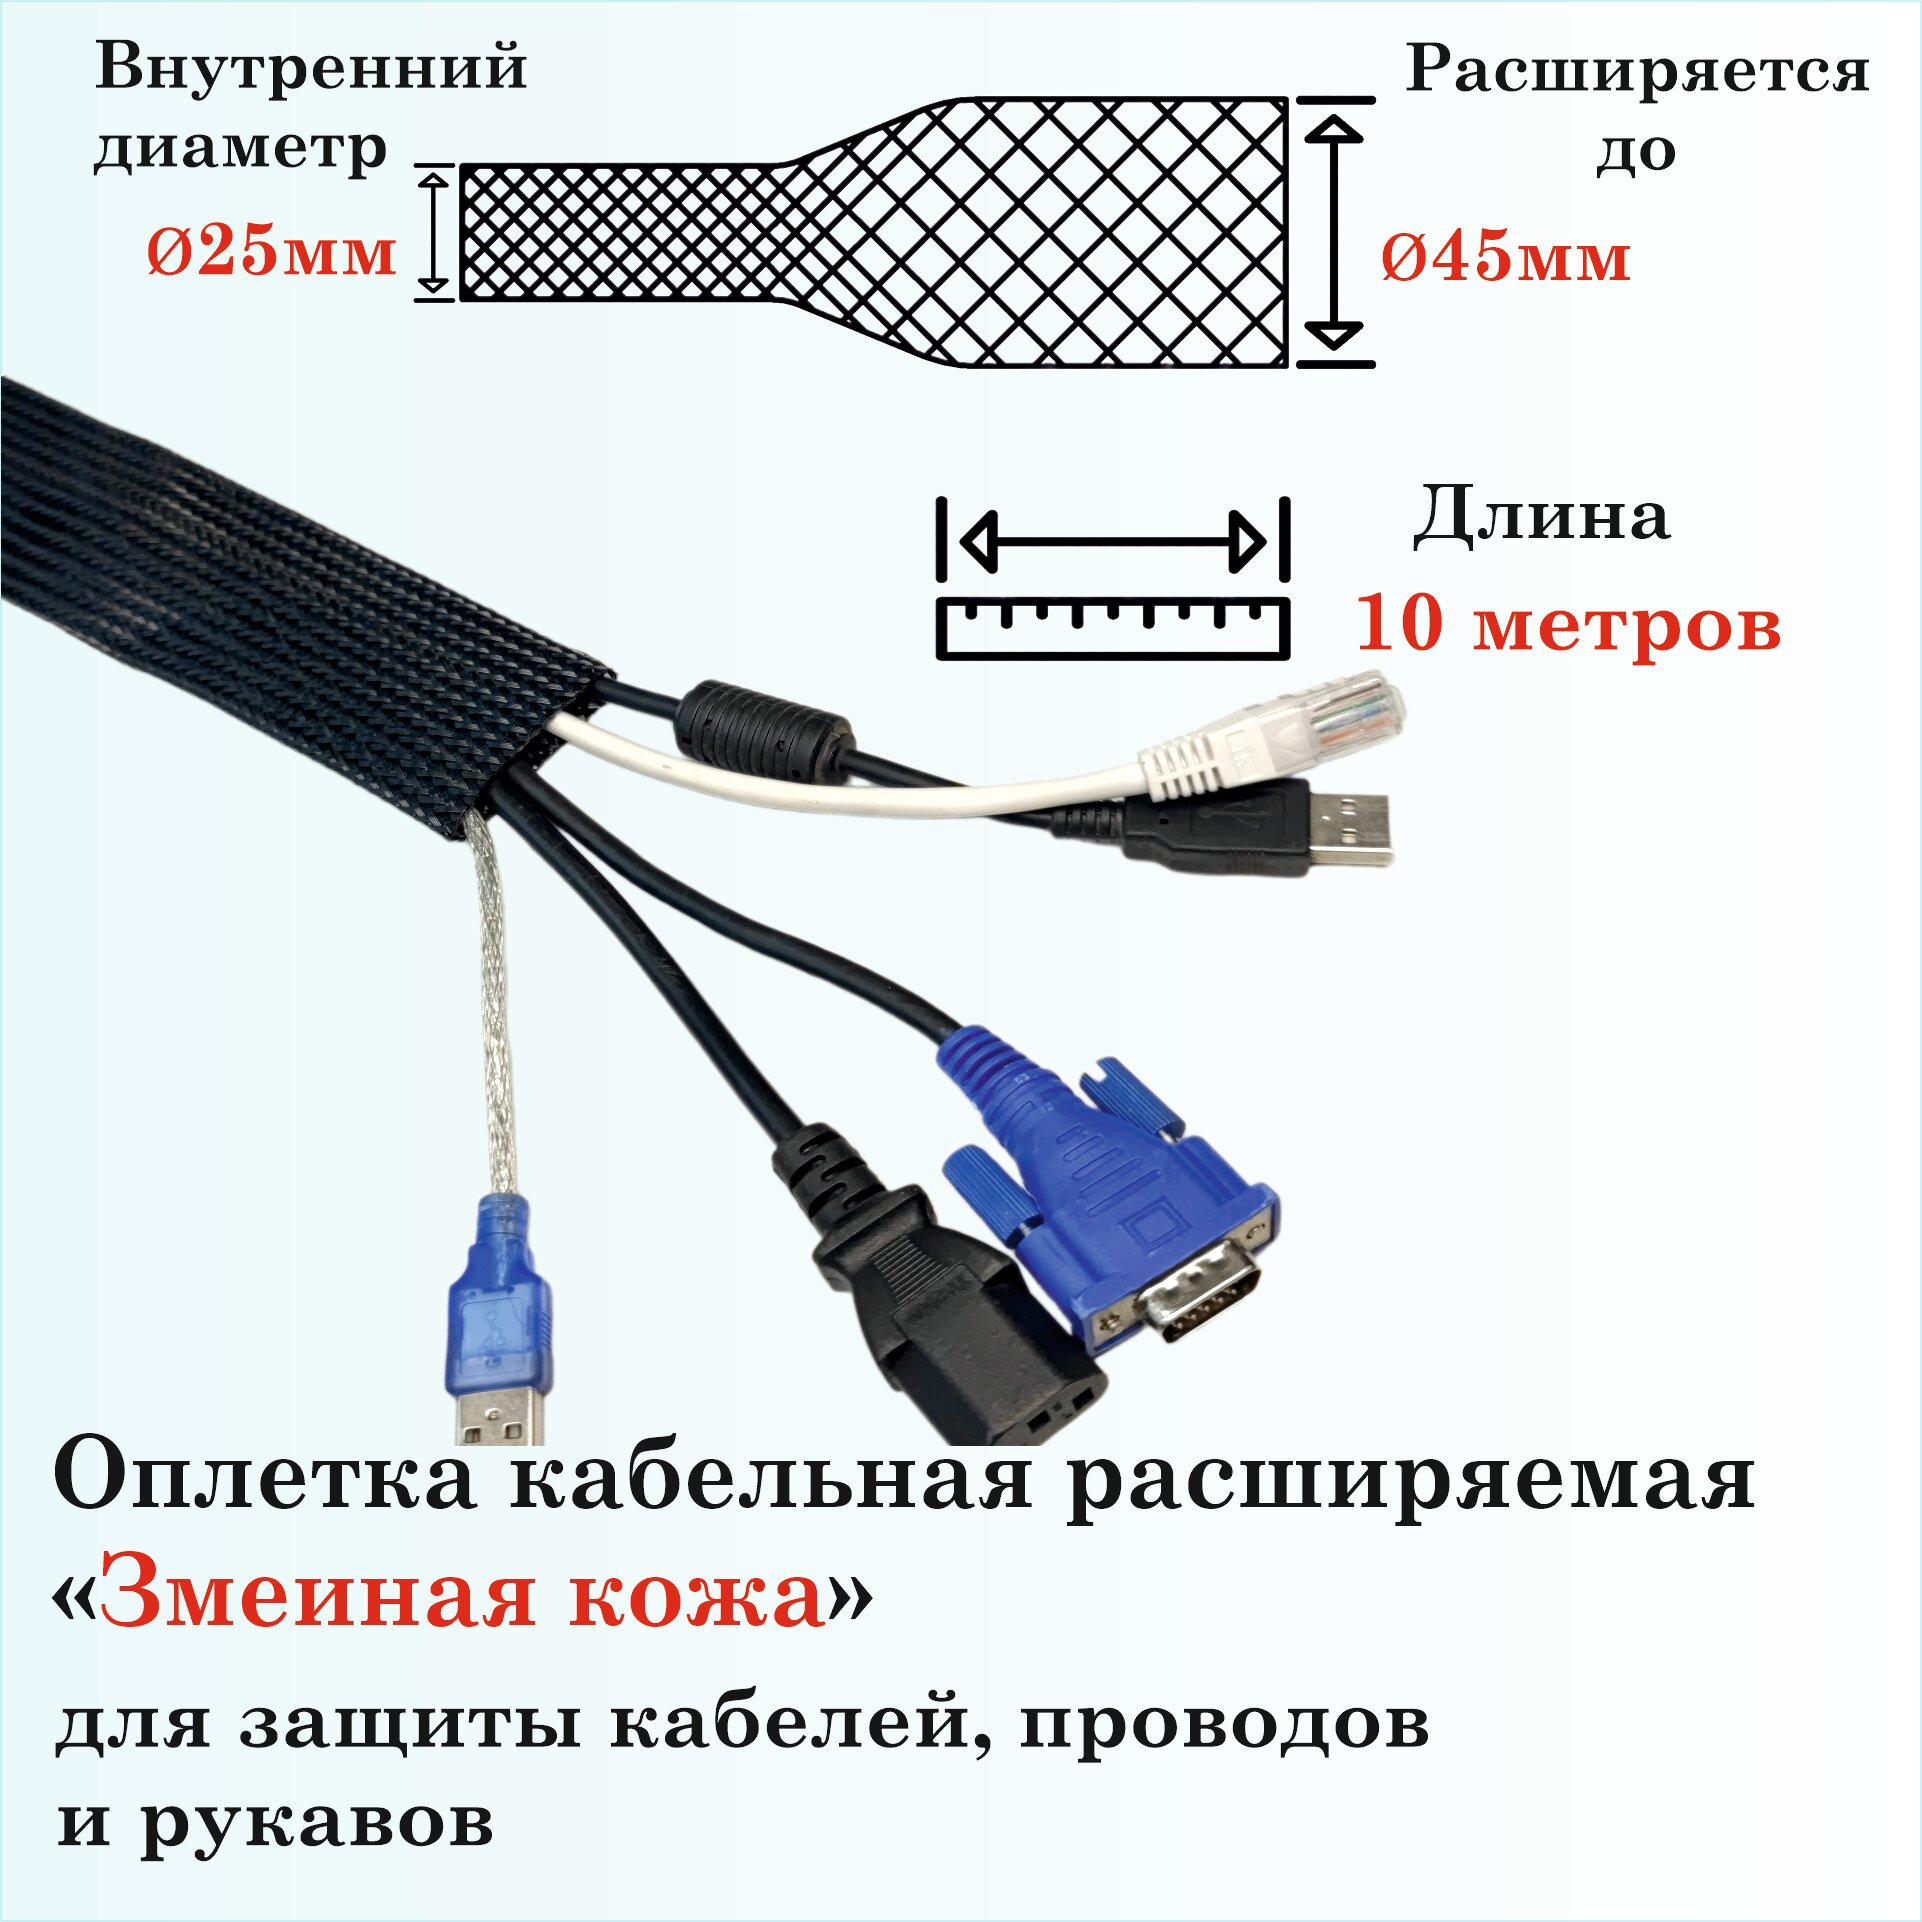 Оплетка кабельная расширяемая для защиты кабелей и проводов "Змеиная кожа" 25мм, 10м, черная